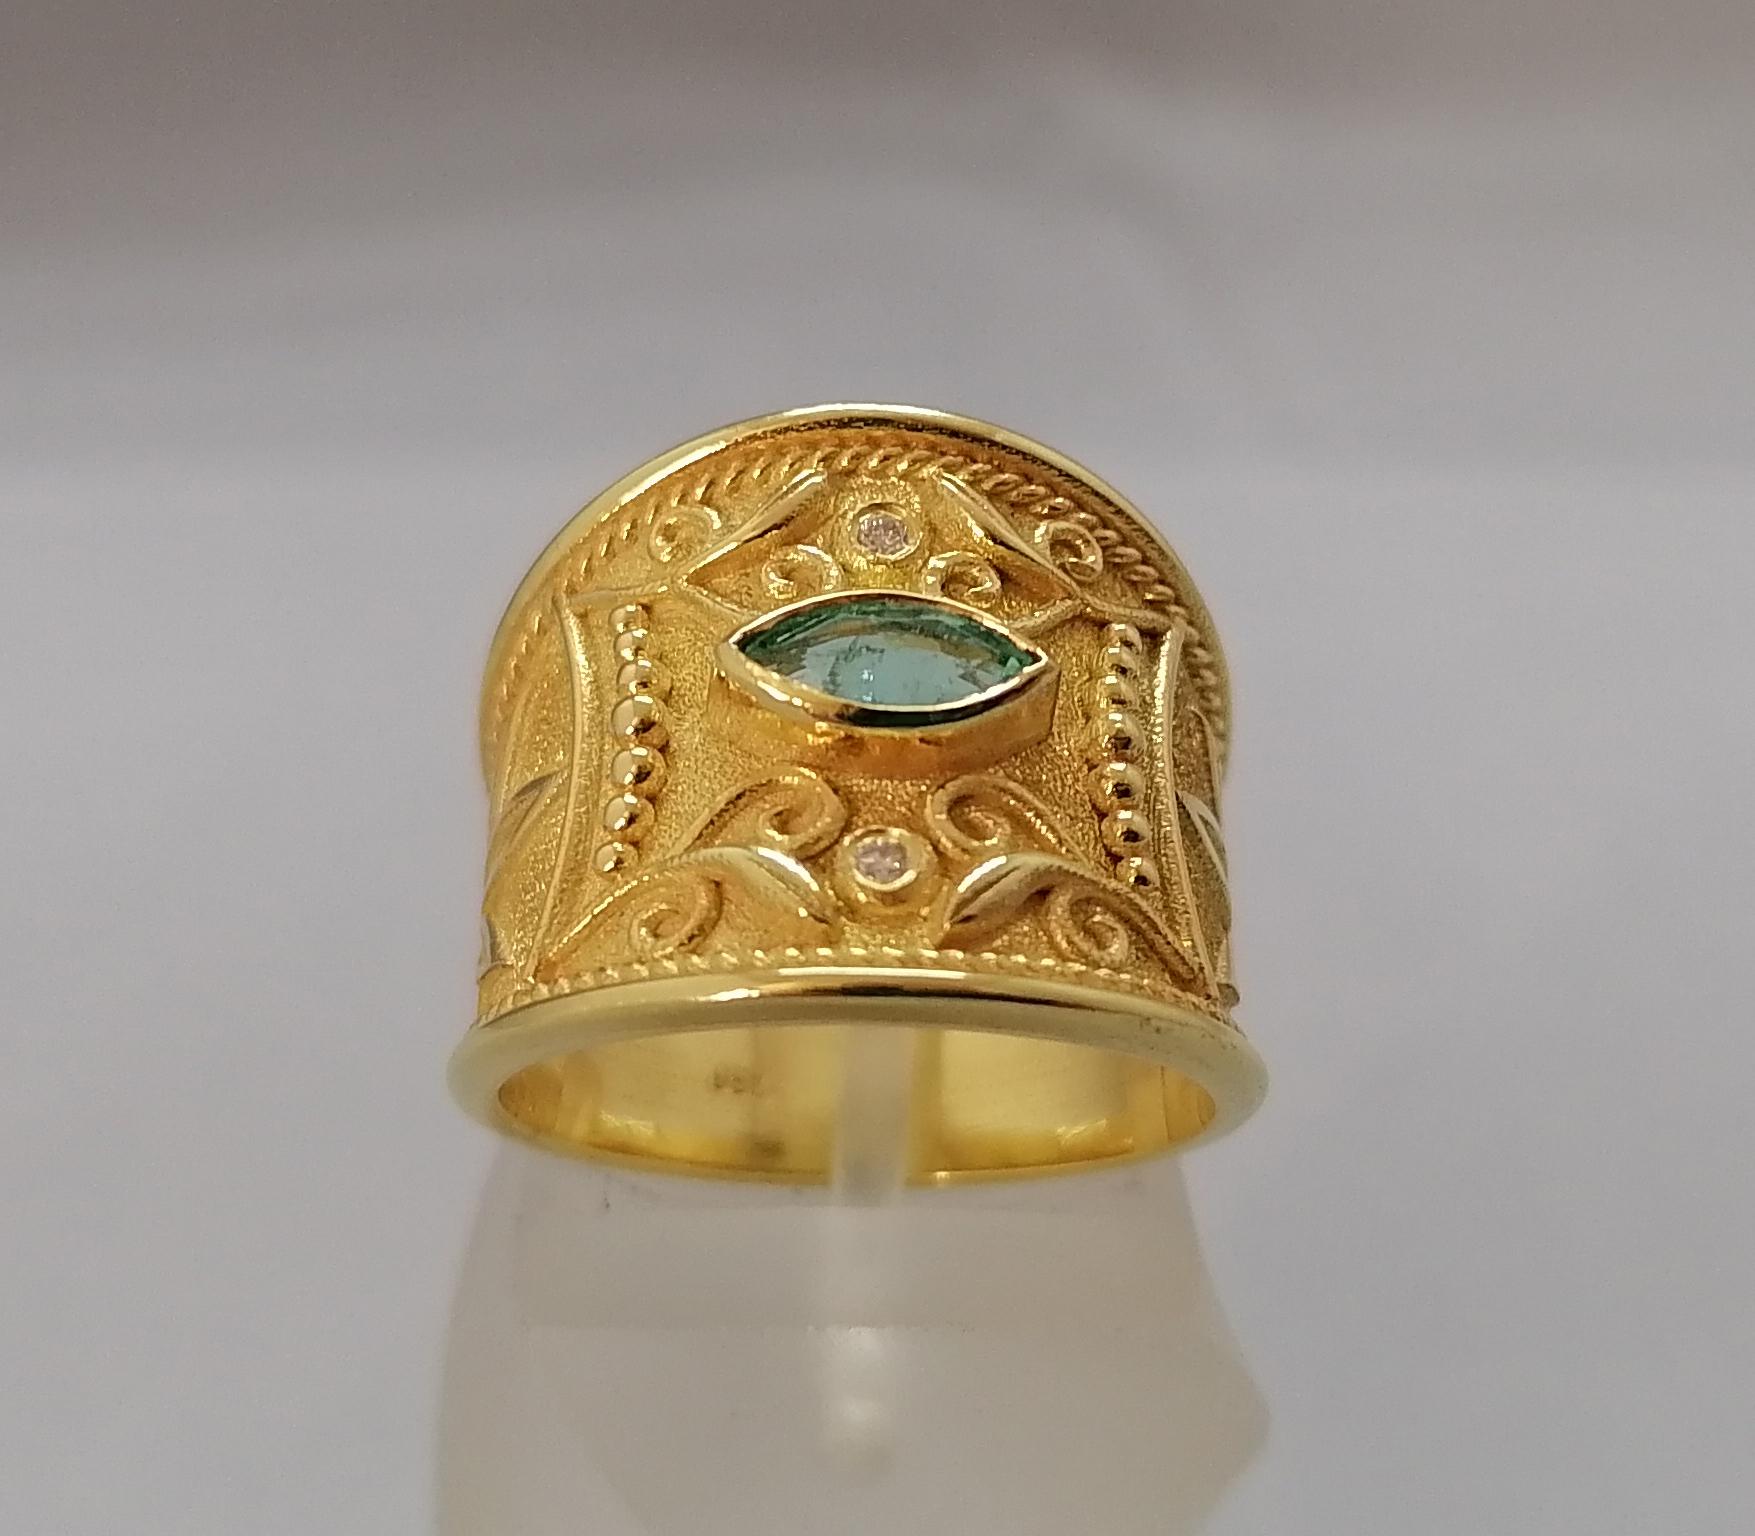 Diese S.Georgios Designer Band Ring ist 18 Karat Gelbgold und alle handgefertigt mit byzantinischen Perlen Granulation und einem einzigartigen Samt Hintergrund beendet. Dieser wunderschöne Ring besteht aus einem natürlichen Smaragd im